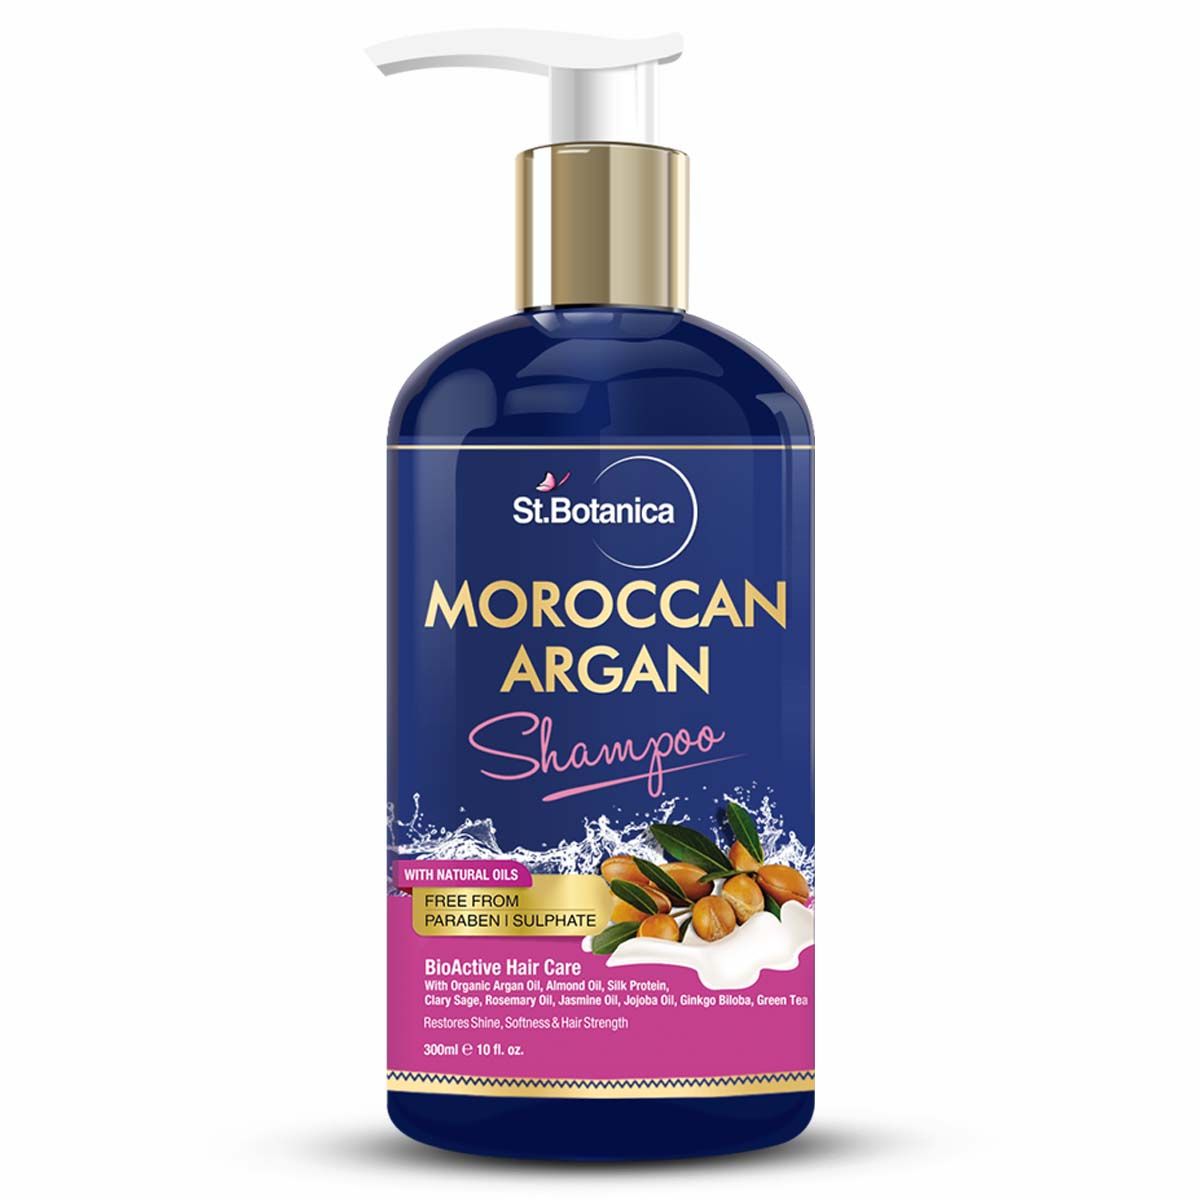 St.Botanica Moroccan Argan Hair Shampoo Paraben Free